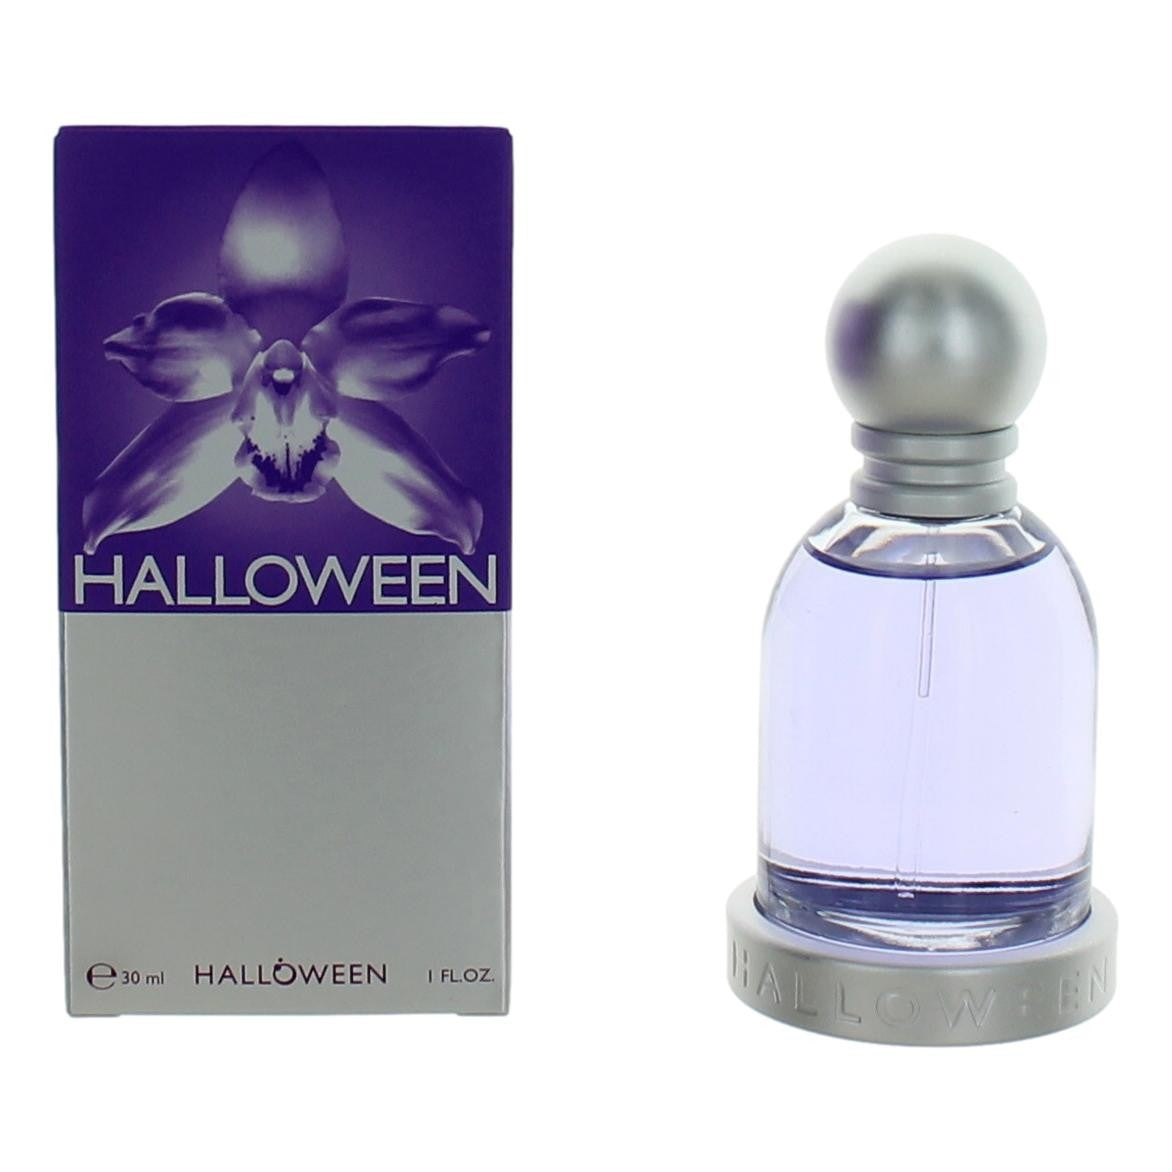 Halloween by J. Del Pozo, 1 oz Eau De Toilette Spray for Women